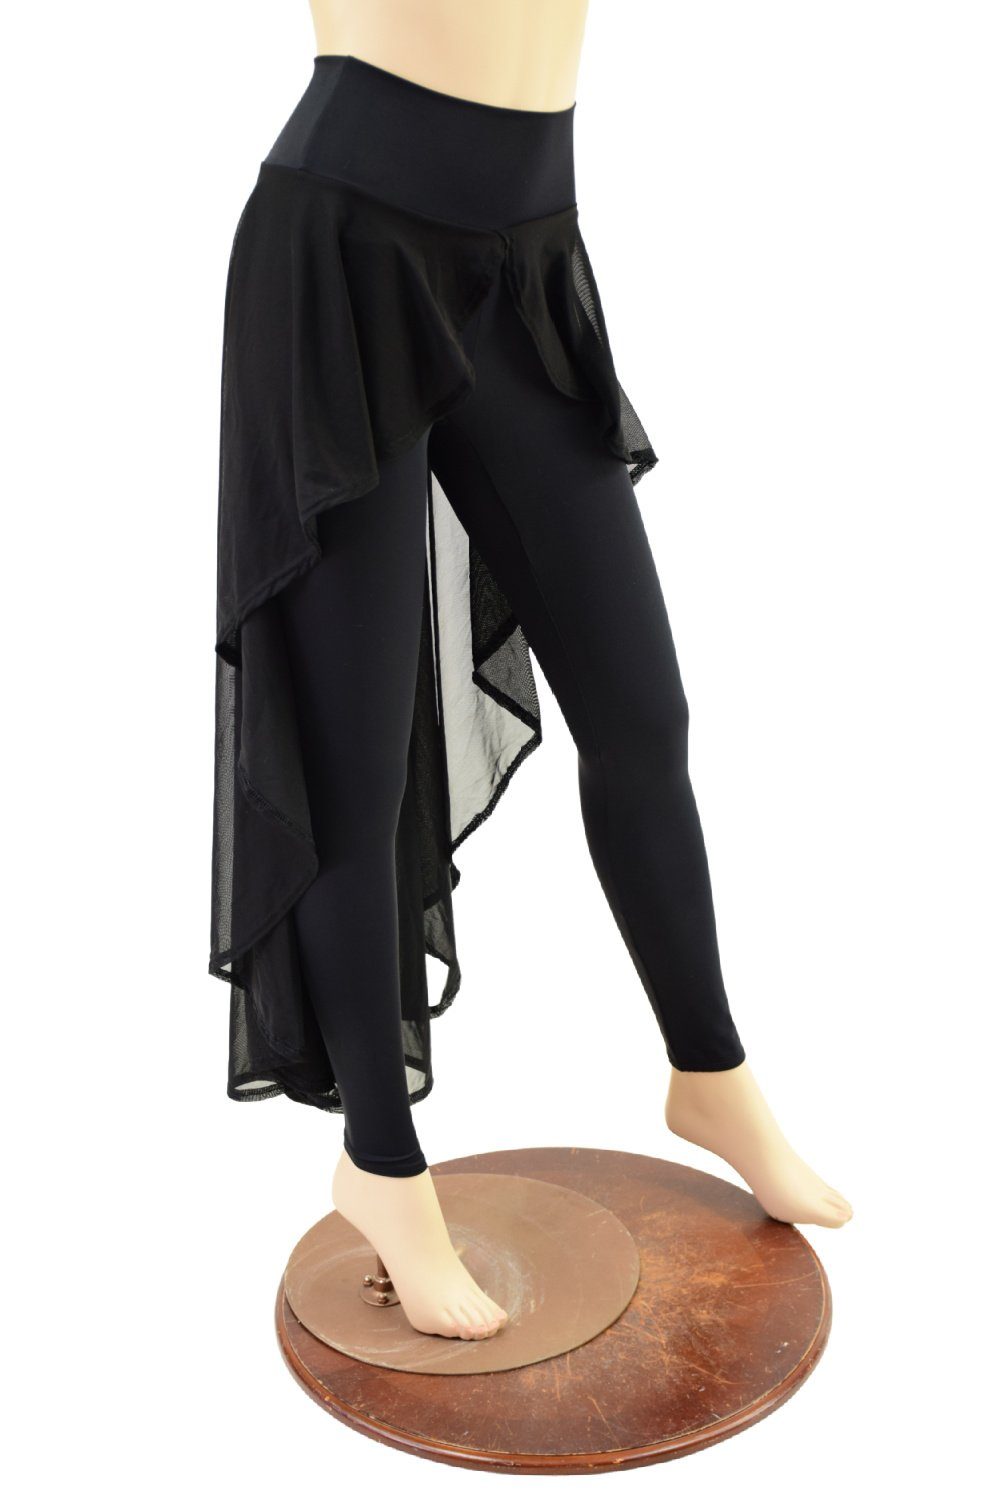 Cabi M'Leggings Skirted Knit Crop Pants Solid Black Size Medium M Pull On  Skirt | Skirt leggings, Knit leggings, Knit crop